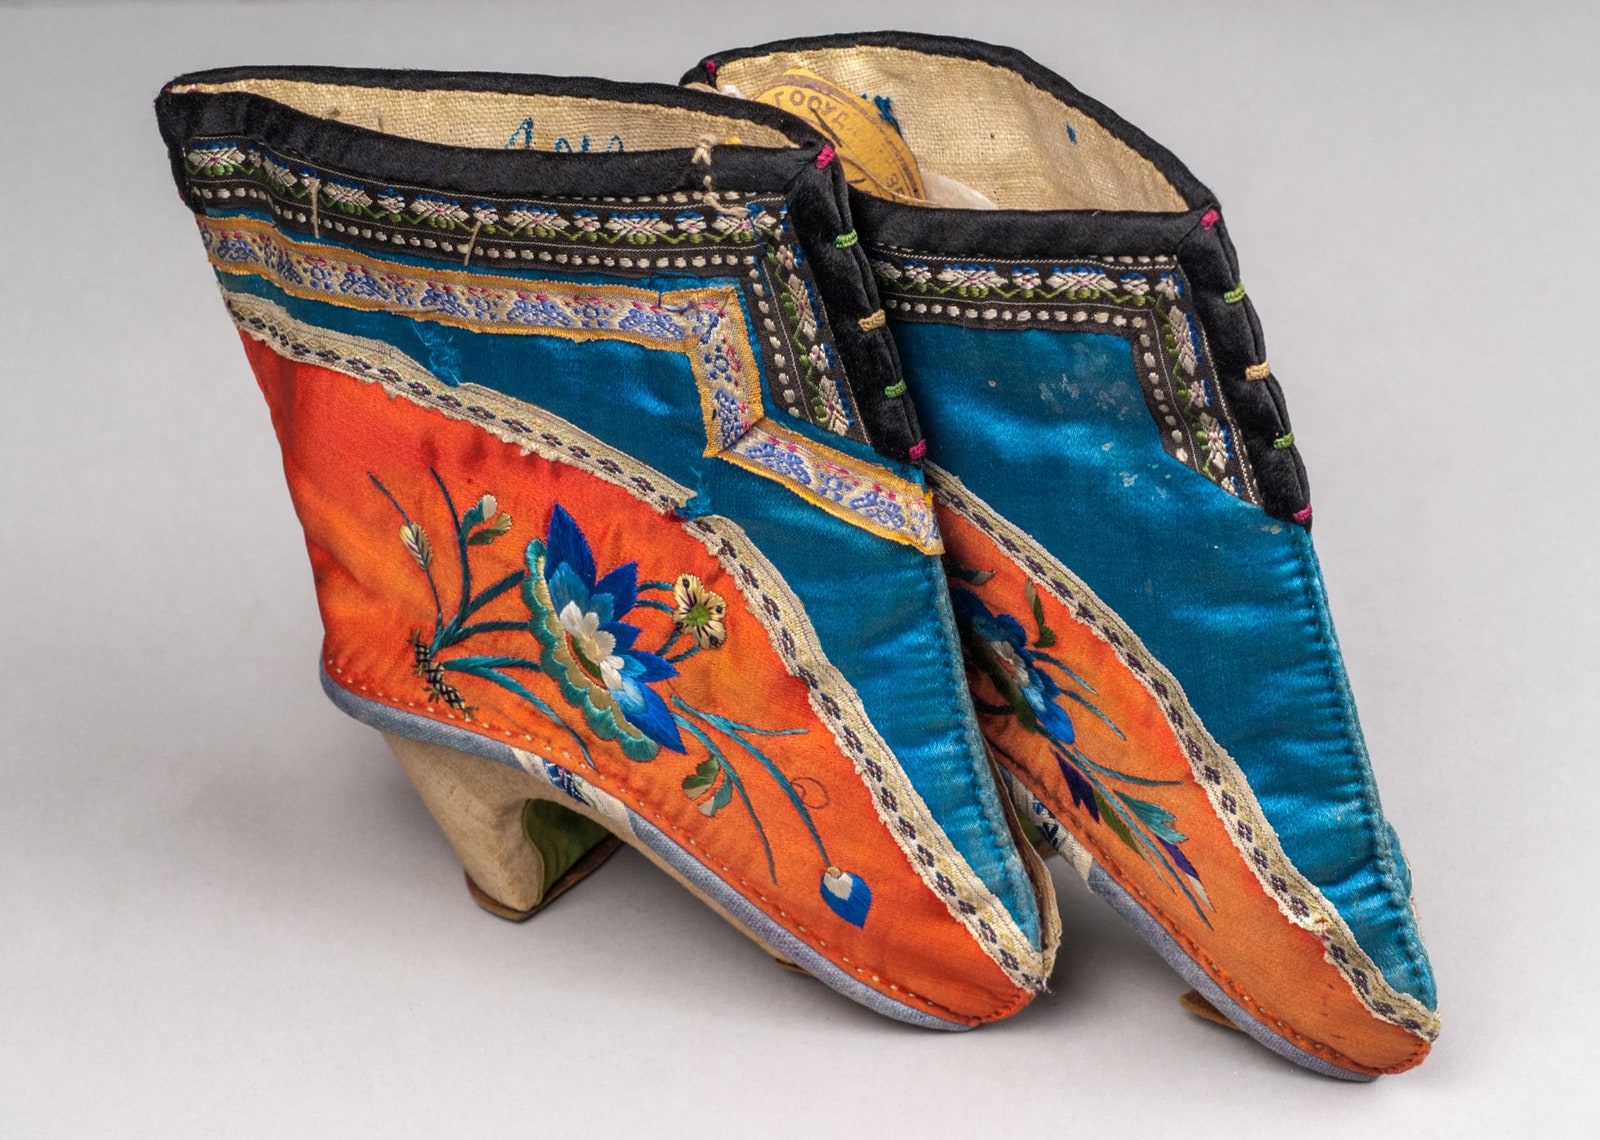 Туфли для бинтованных ног Китай XIX век шелк дерево кожа инв. № 5538.